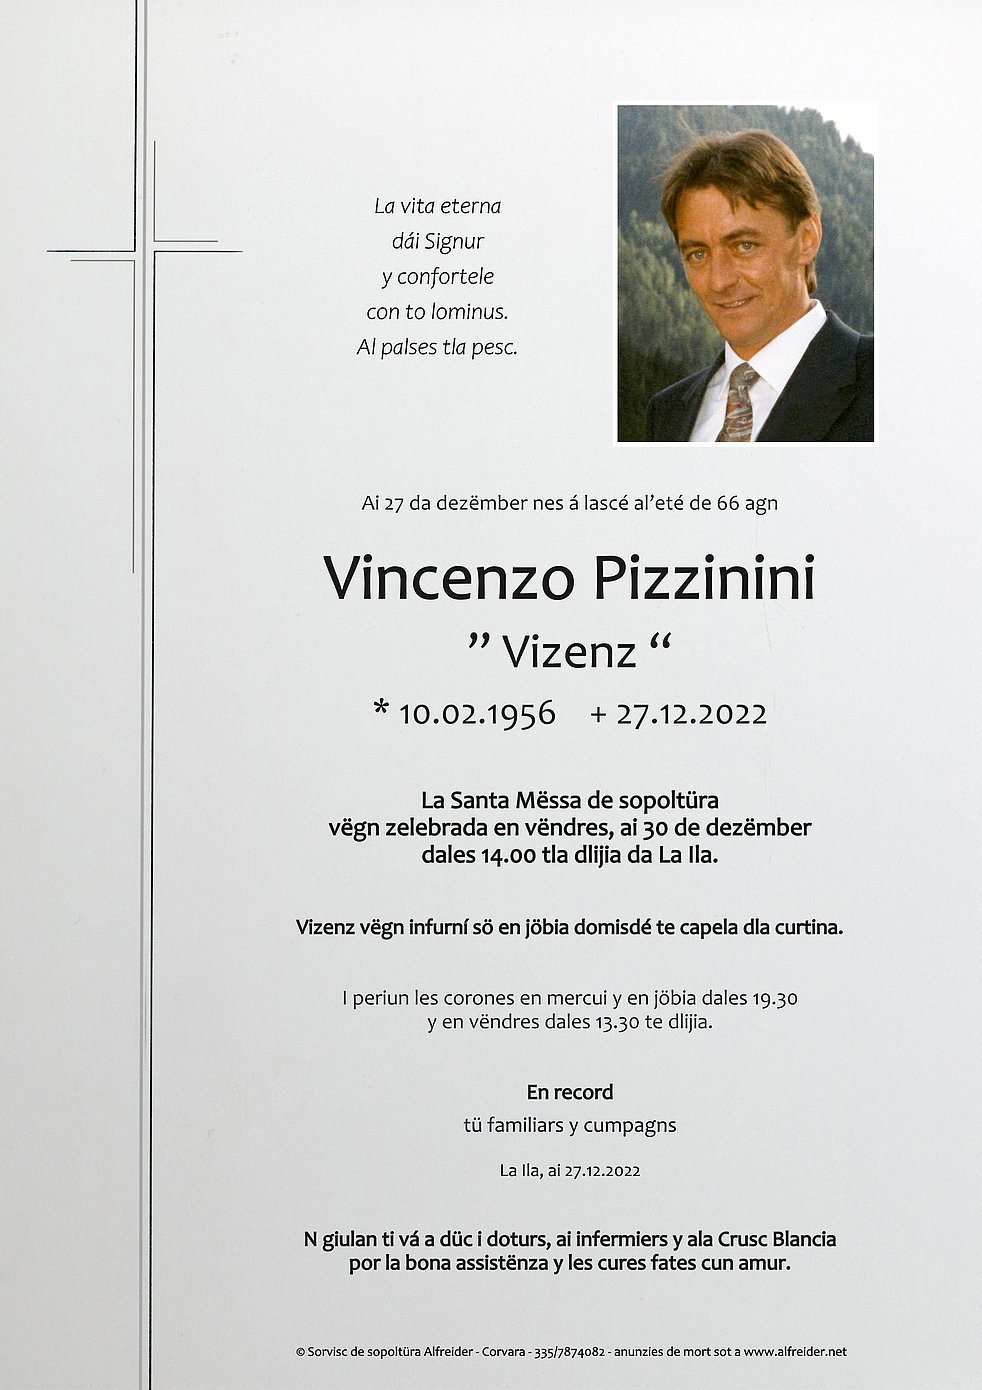 das Vincenzo TrauerHilfe.it aus Abtei - - Südtiroler Pizzinini Gedenkportal